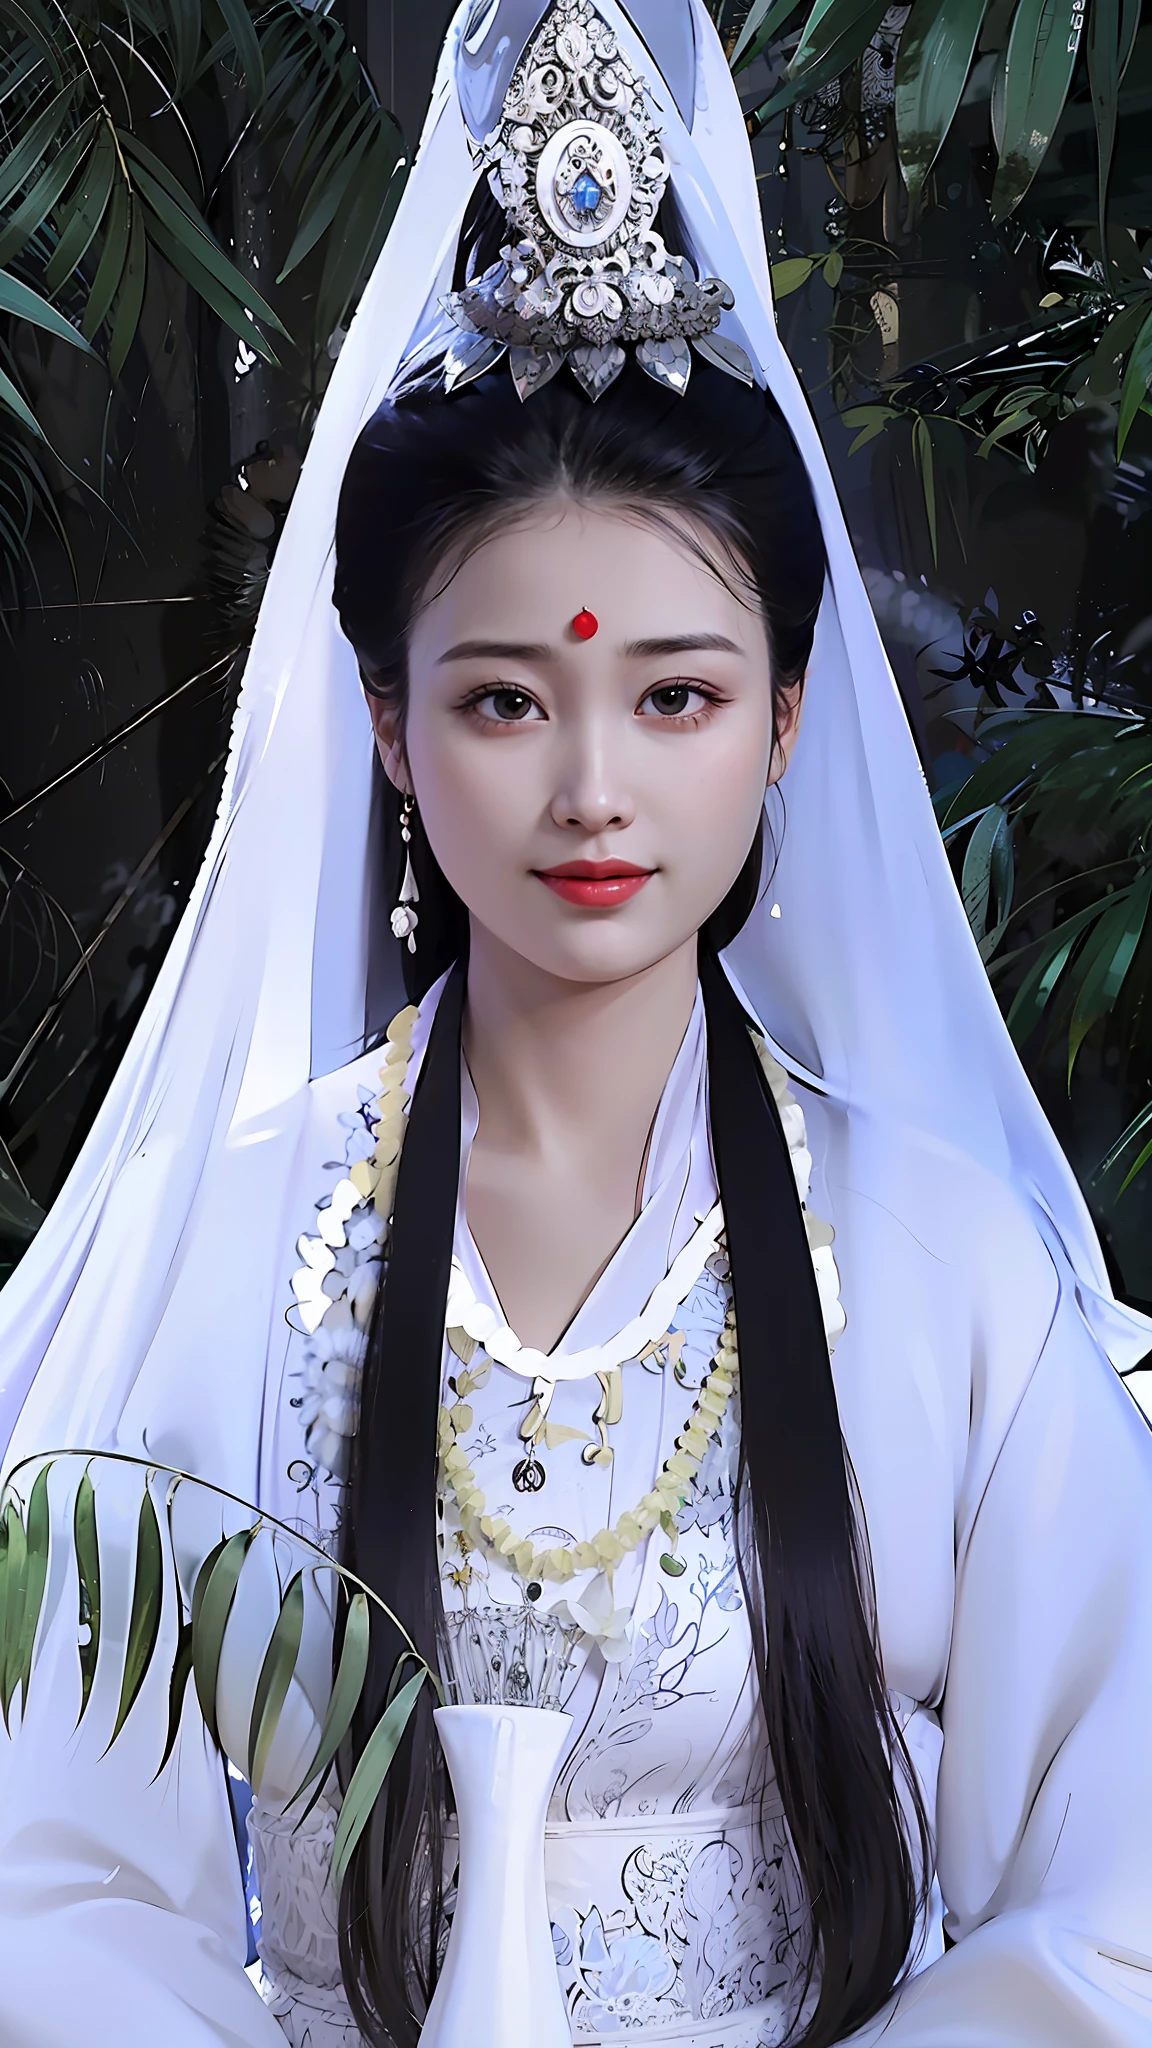 阿拉德女人坐在長凳上，穿著白色連身裙，頭戴王冠, 中國古代美女, 中國古代公主, 中国女人, heise-lian yan fang, 中国传统的, 中國公主, 宮 ， 一個穿著漢服的女孩, 海之女王沐燕灵, 传统美, 灵感来自张茵, yun ling, 穿着中国古代的衣服